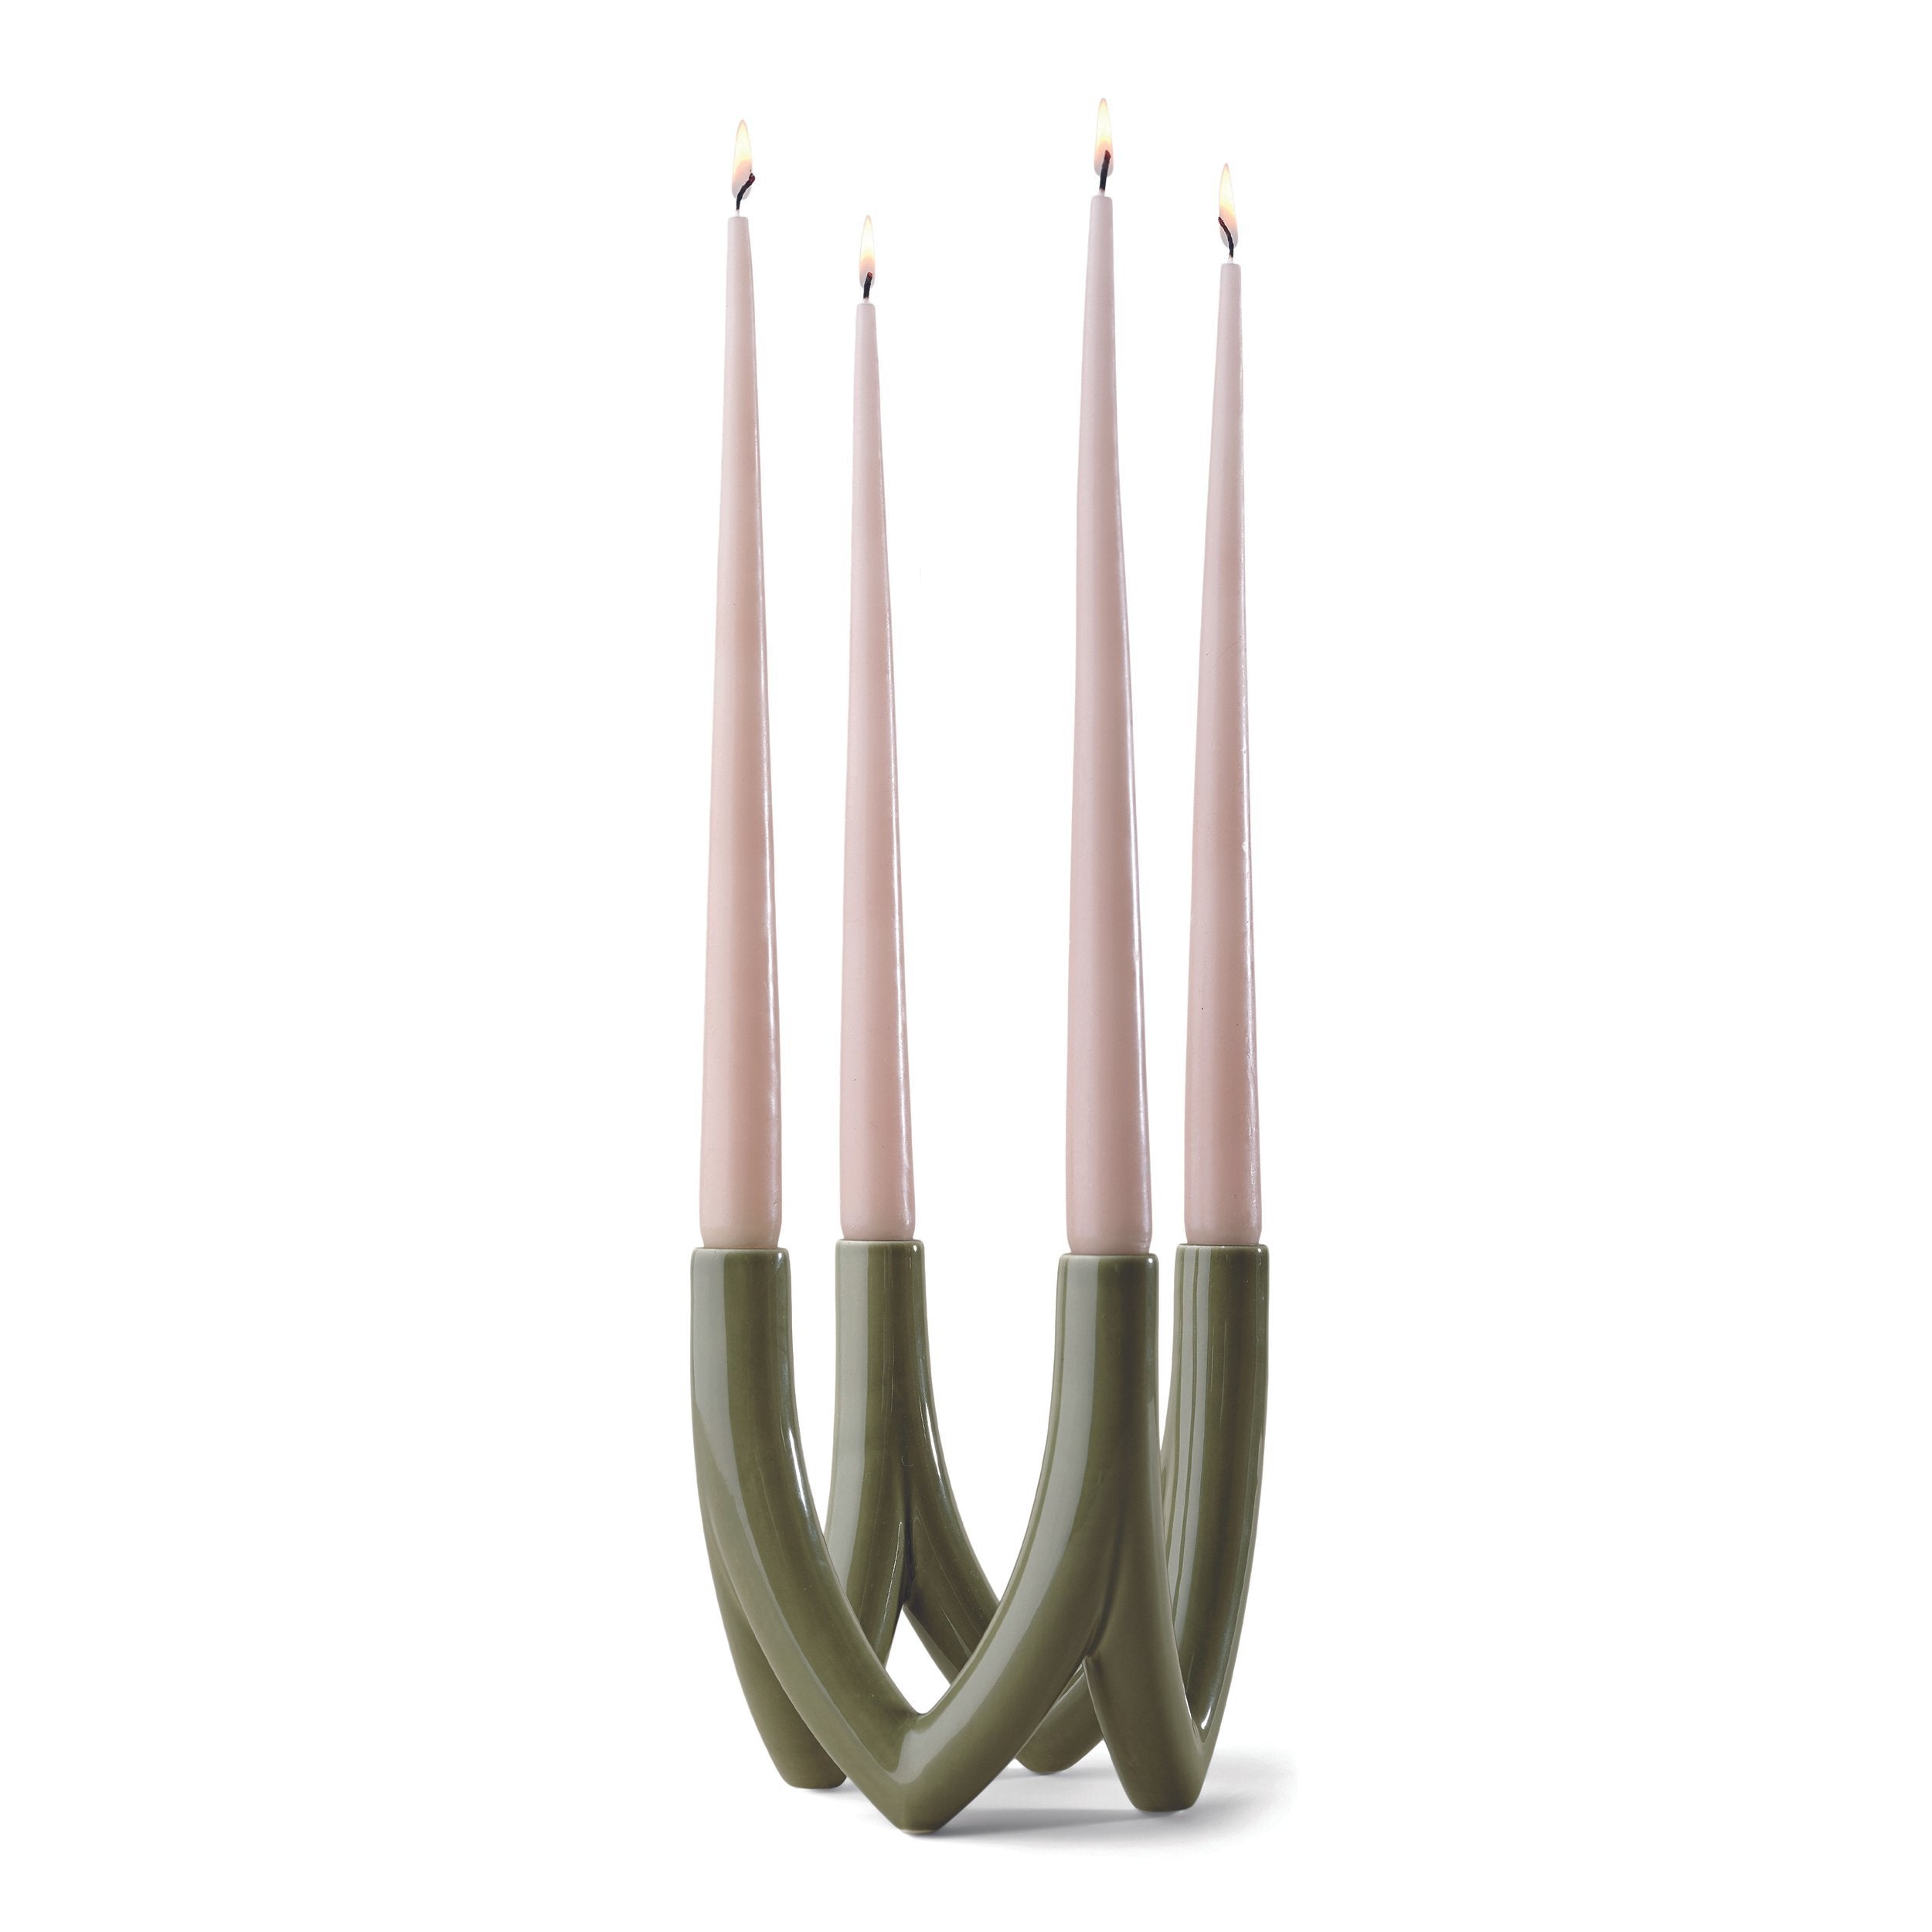 Ro Collection Kronleuchter Kerzenständer mit 4 Armen, olivgrün